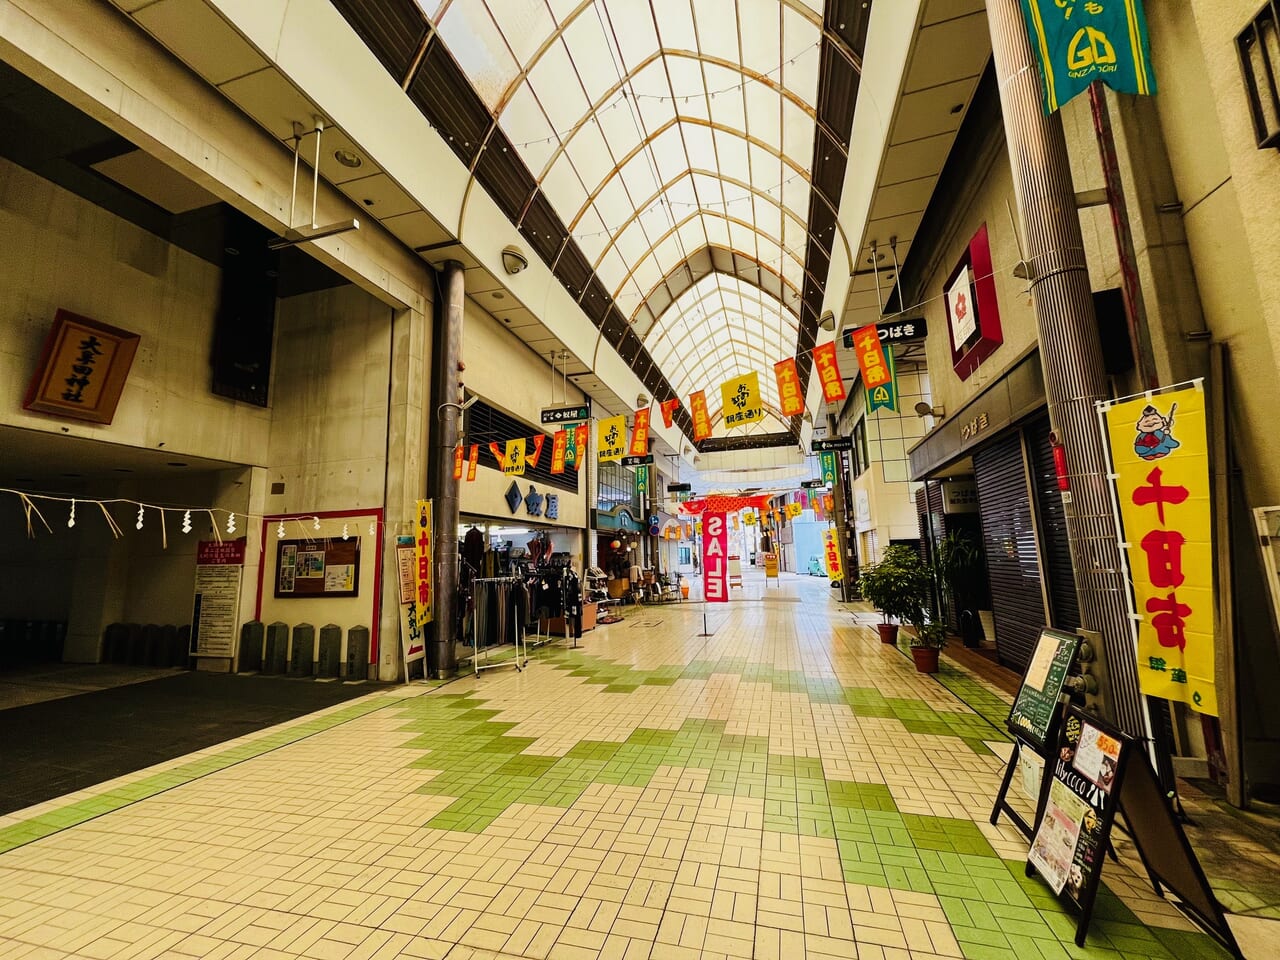 2024年4月に大牟田市で開催される『オオムタアツシの青春』公開オーデション